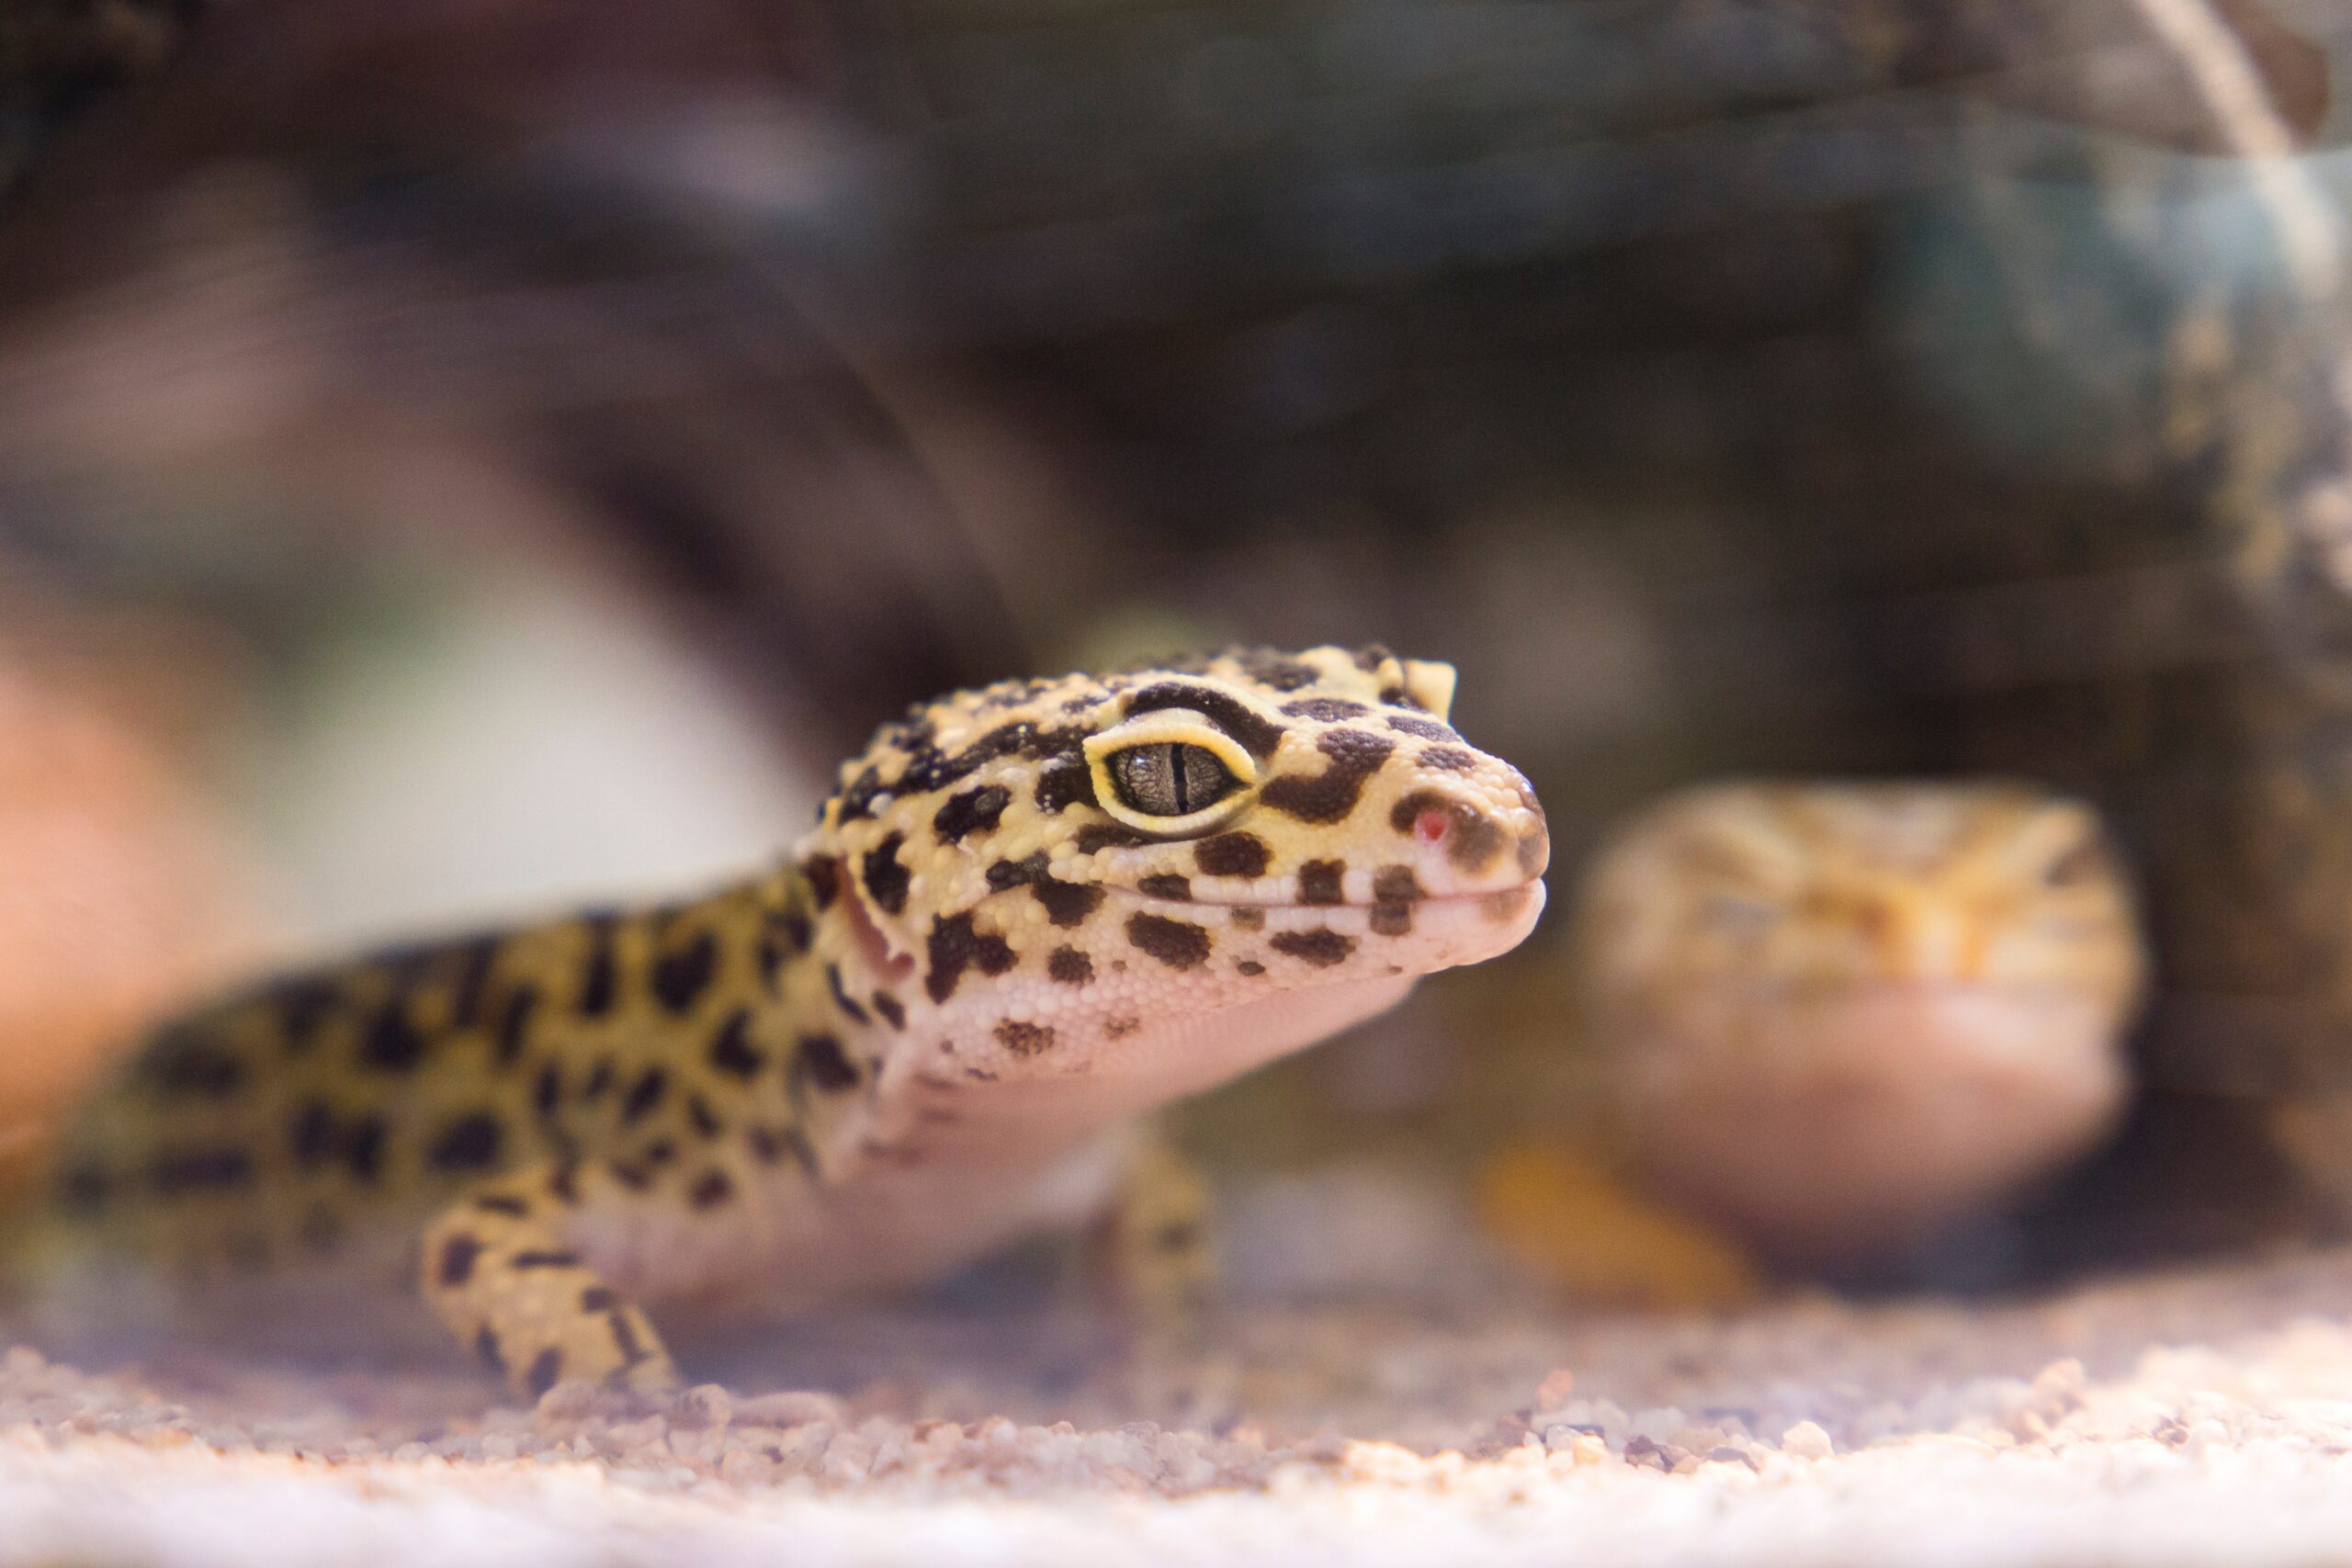 Leopard gecko in its habitat